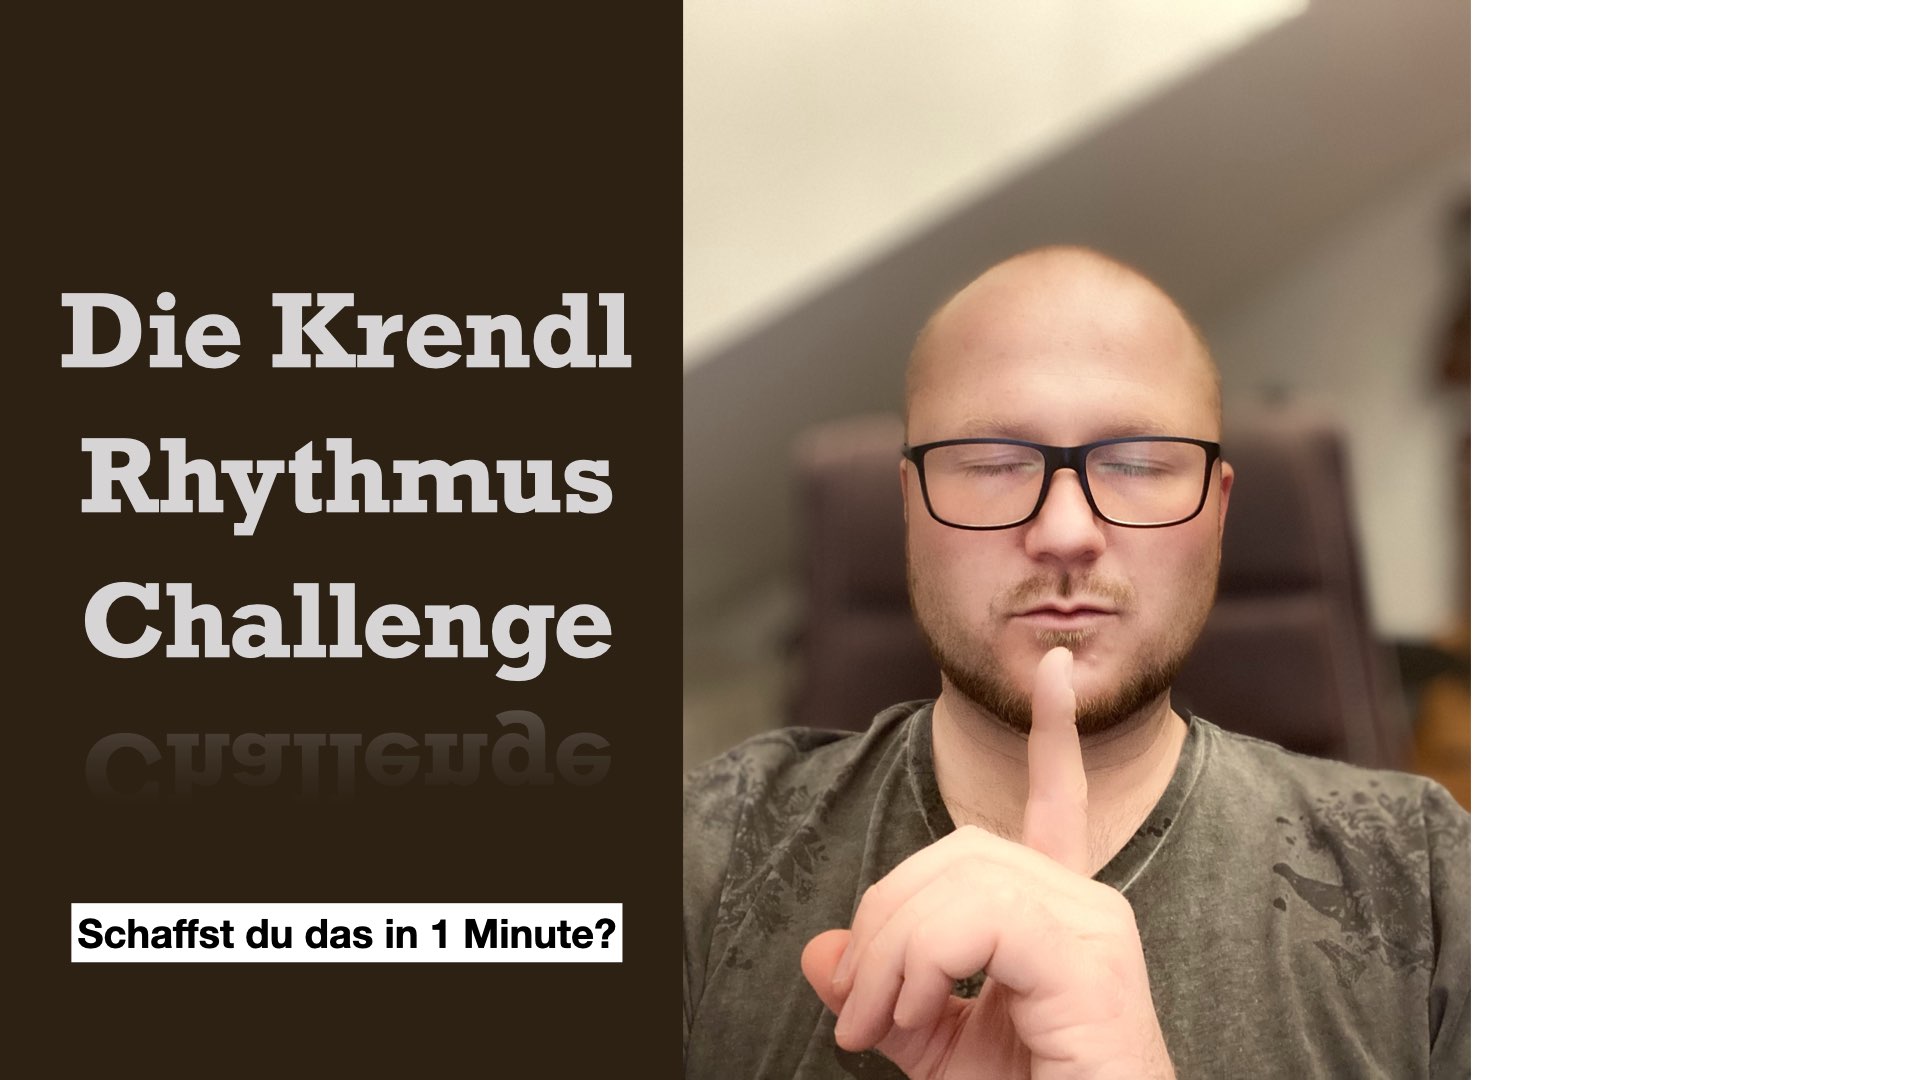 Die Krendl Challenge - Rhythmusverbesserung in 1 min!